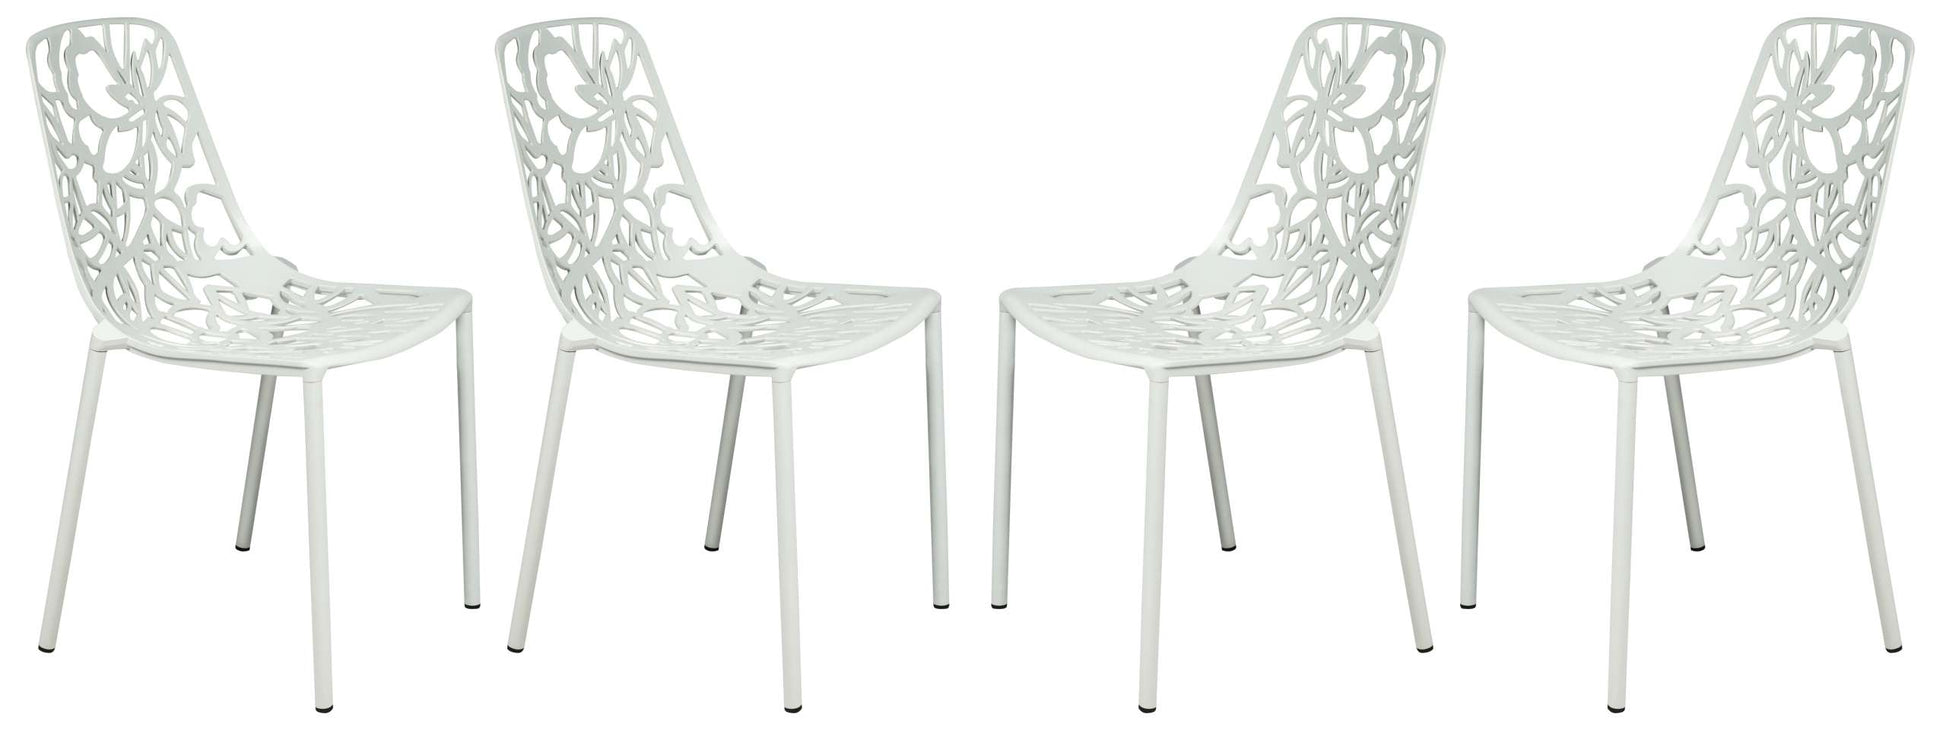 LeisureMod Modern Devon Aluminum Chair, Set of 4 | Dining Chairs | Modishstore - 51